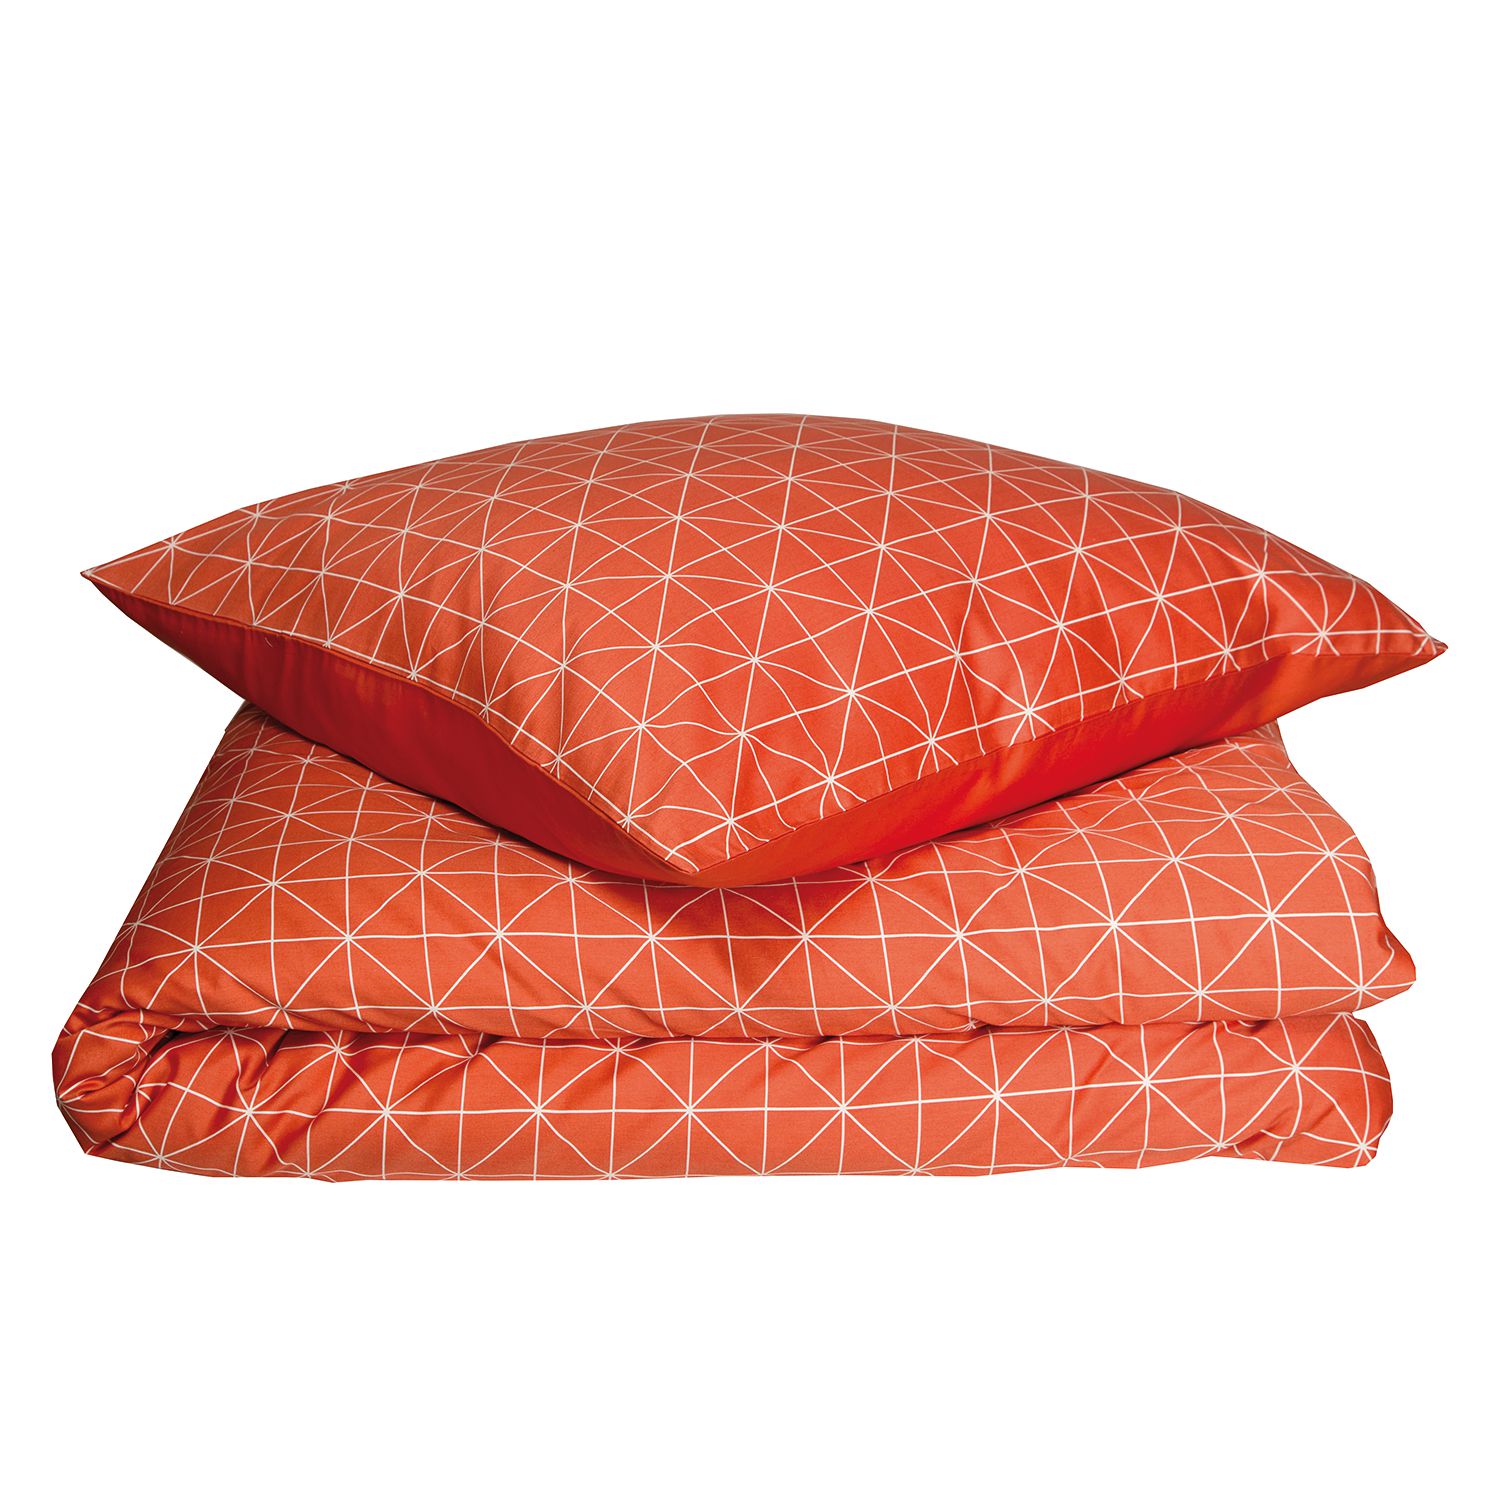 Bettwäsche Grid - Baumwollstoff - Orange / Cremeweiß - 155 x 220 cm + Kissen 80 x 80 cm, Schöner Wohnen Kollektion